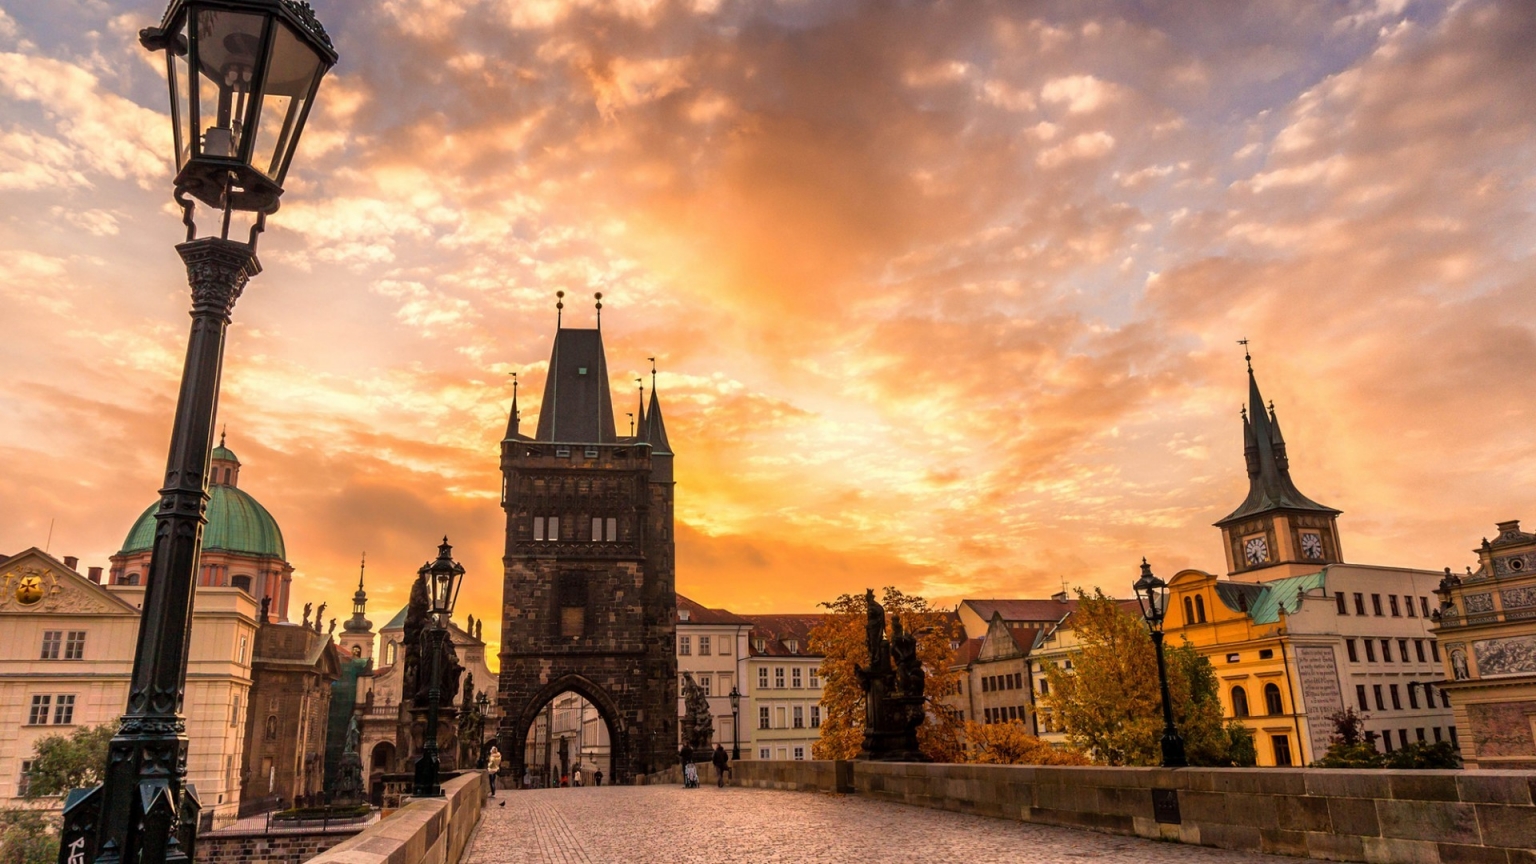 Sunset in Prague for 1536 x 864 HDTV resolution